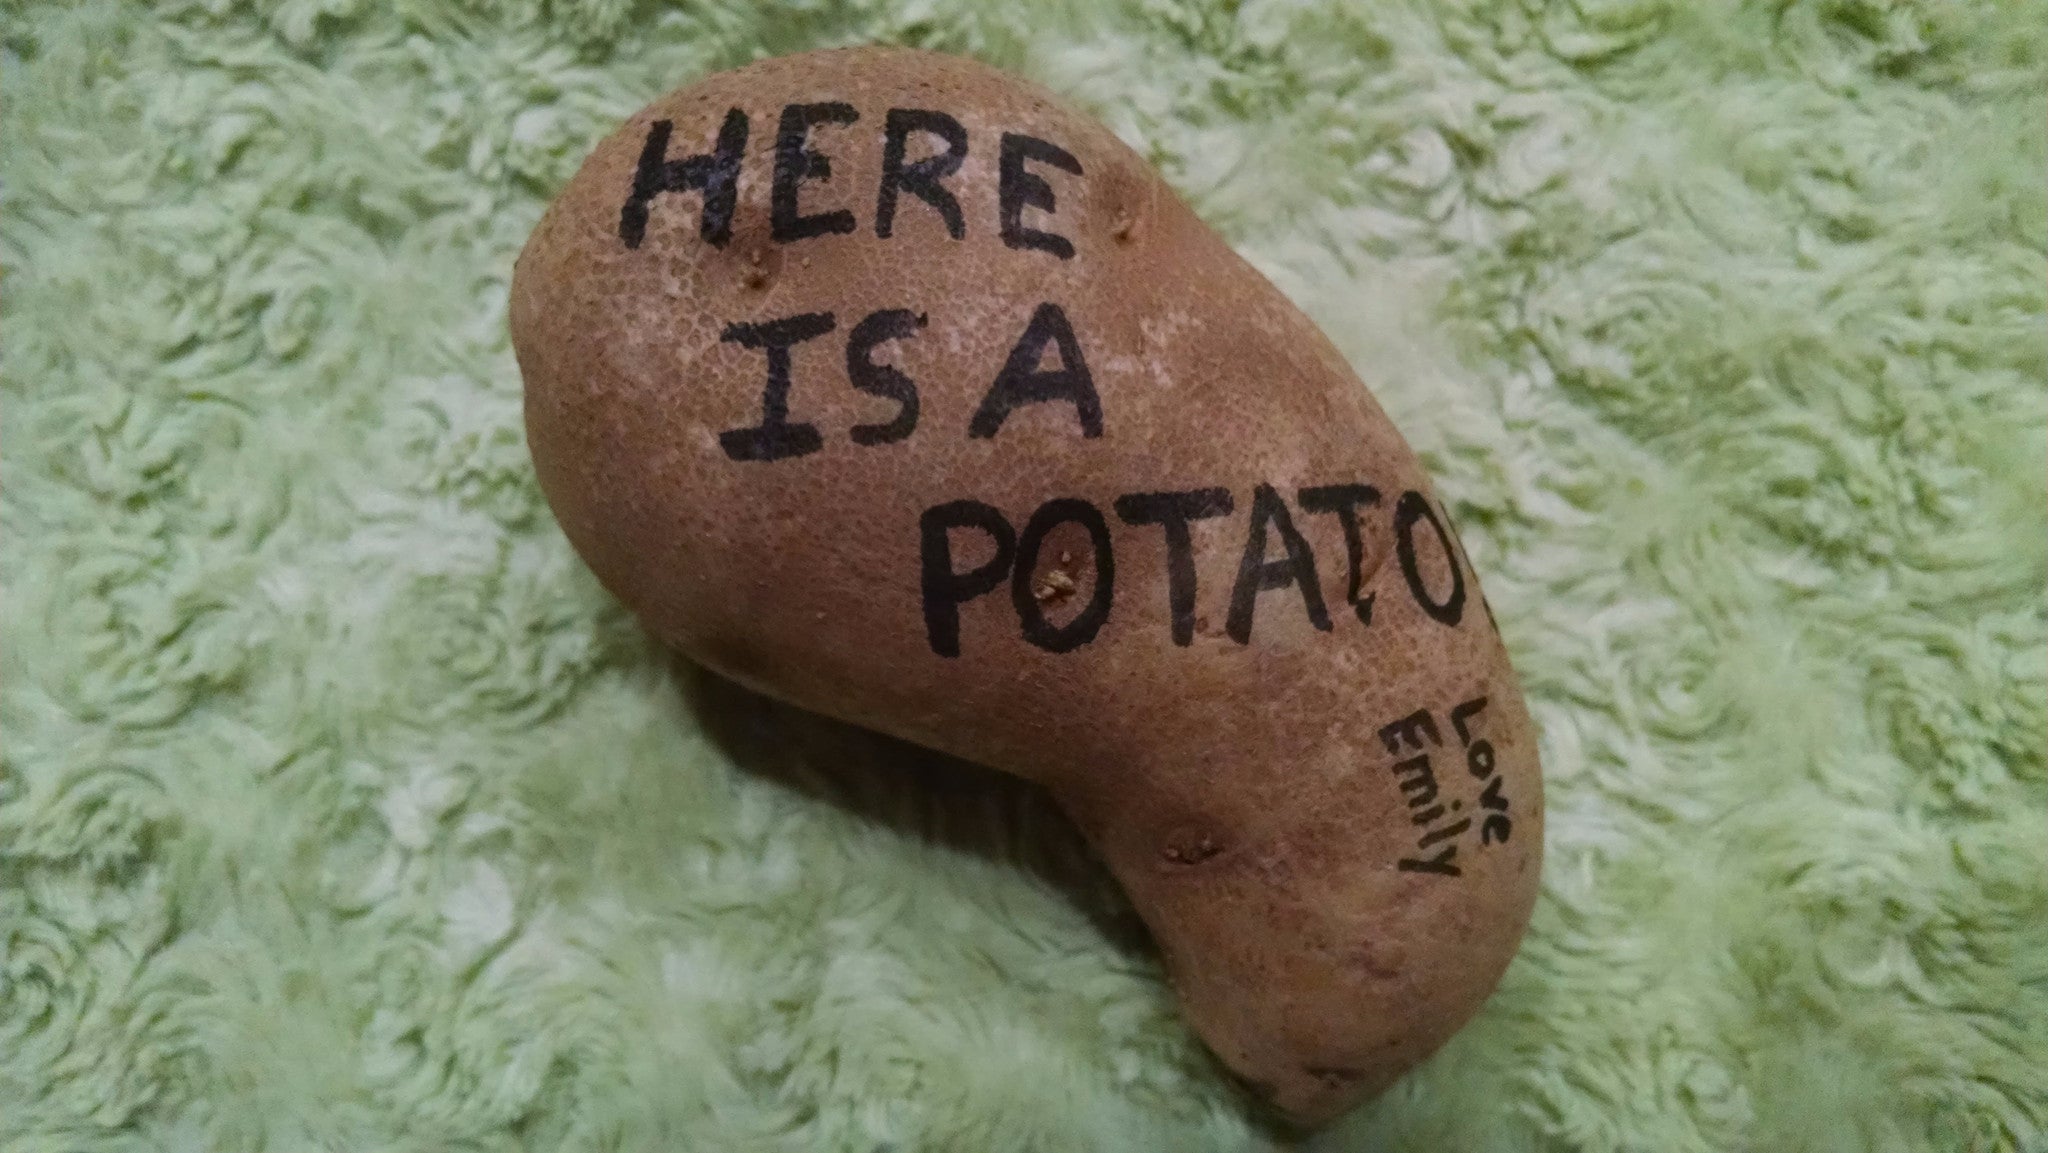 Mail a Potato